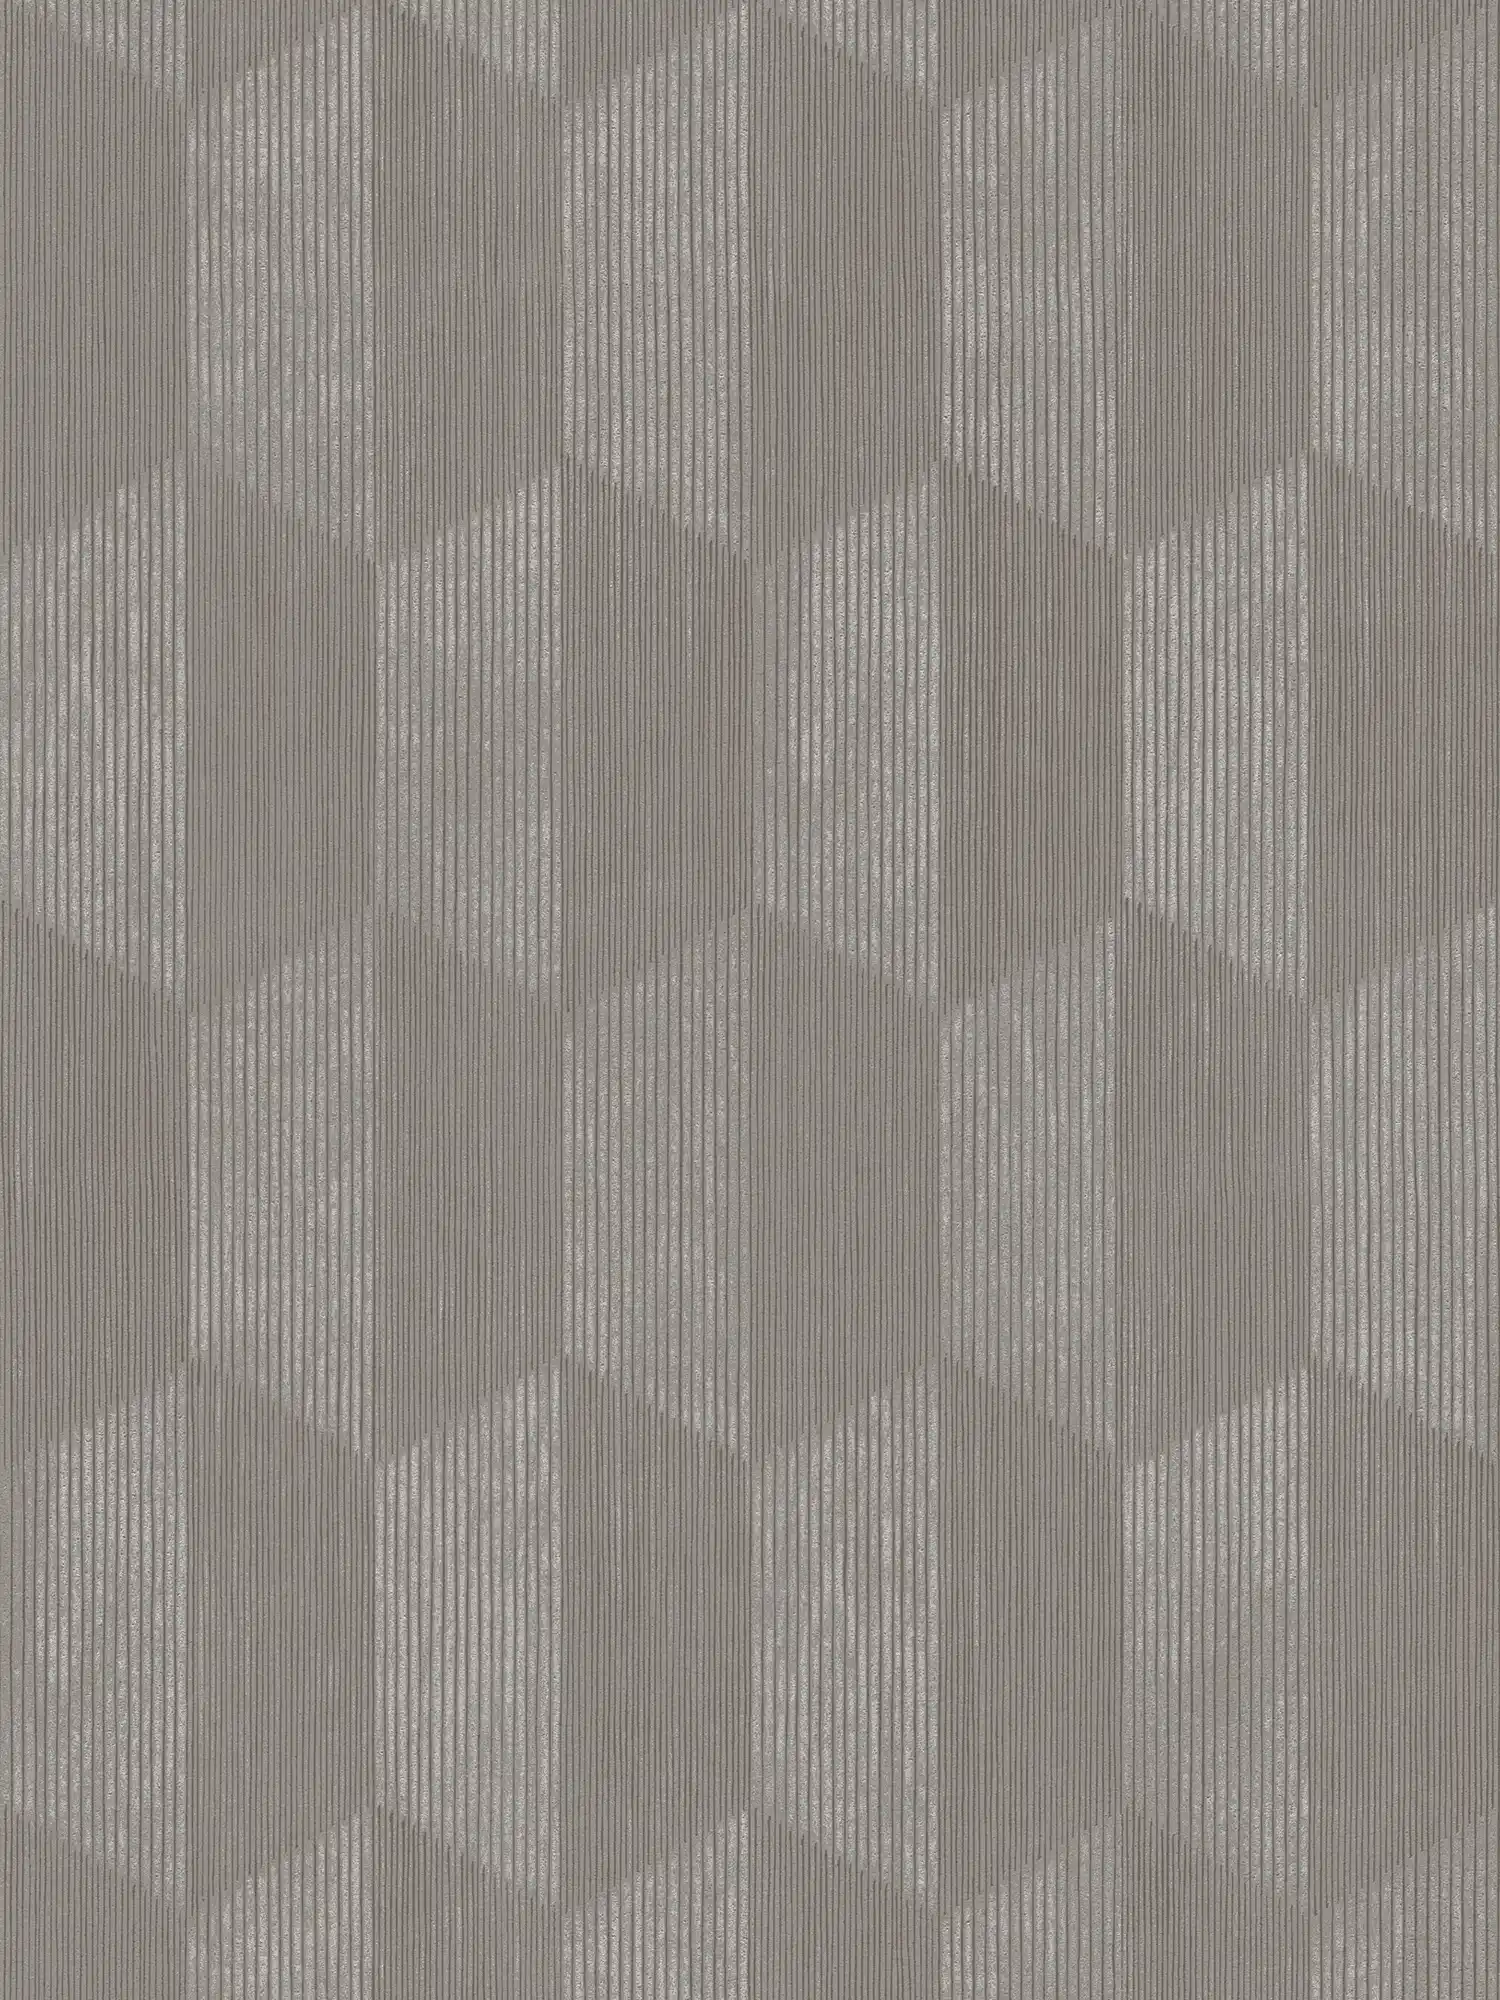 Papier peint structuré avec motif graphique 3D - gris, beige
